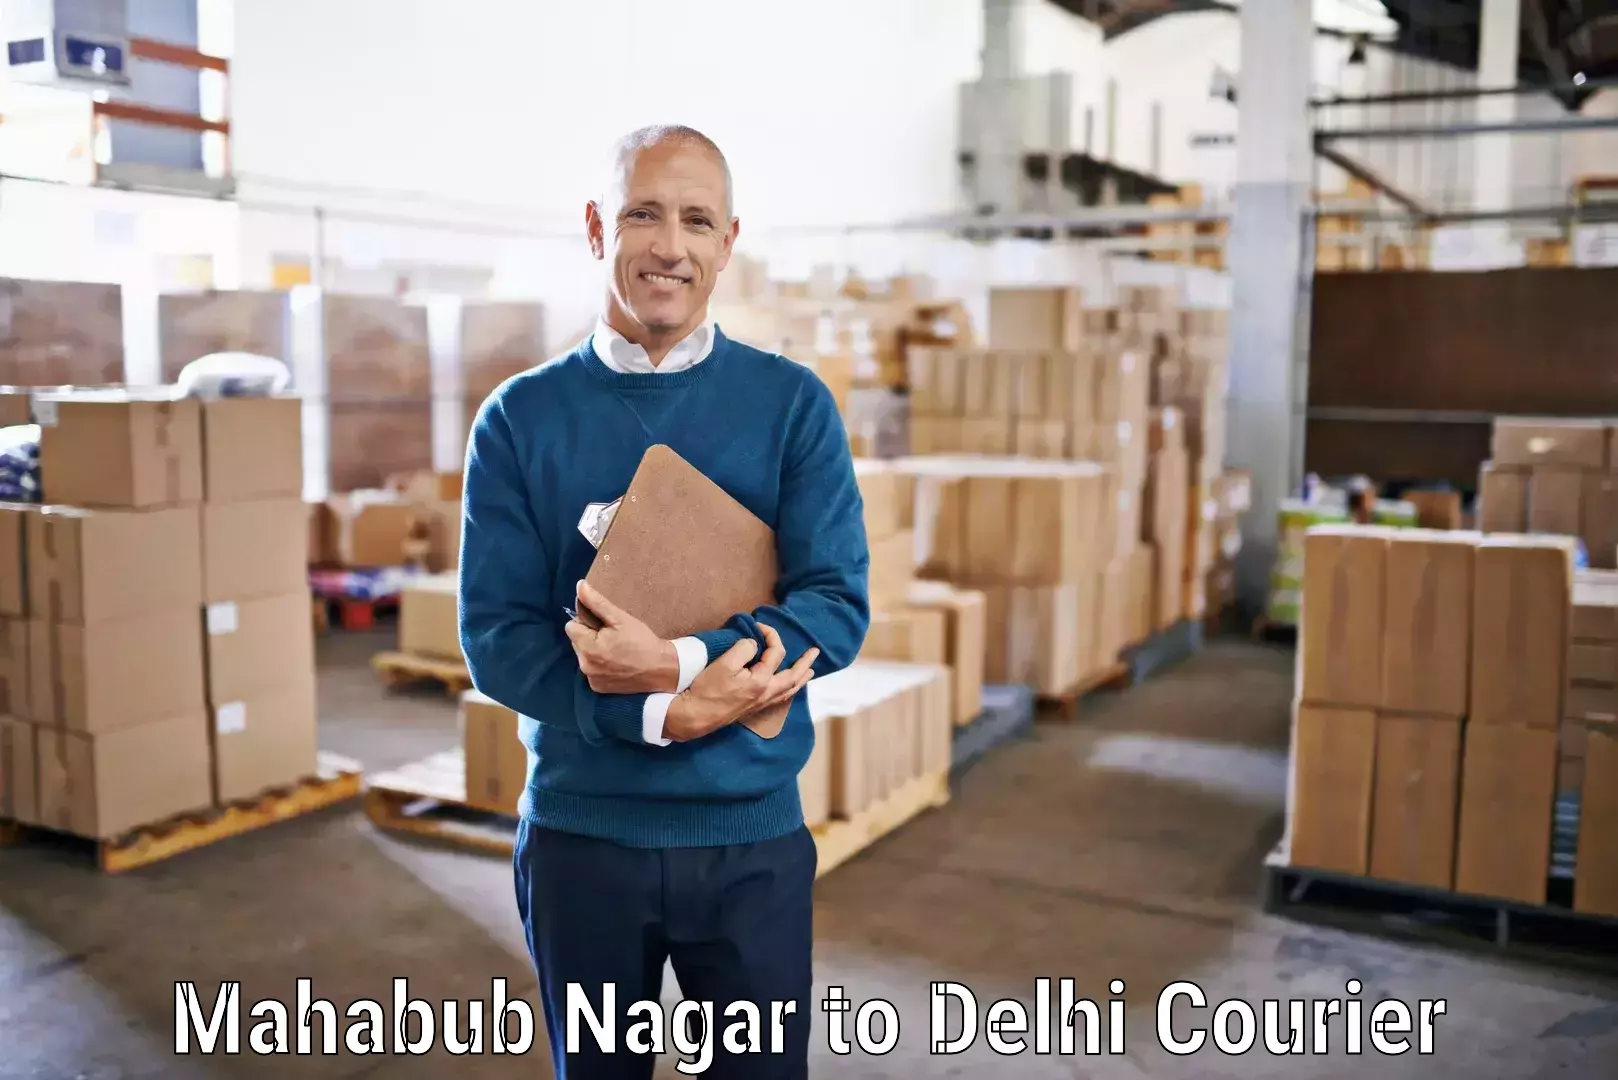 Efficient parcel transport Mahabub Nagar to Delhi